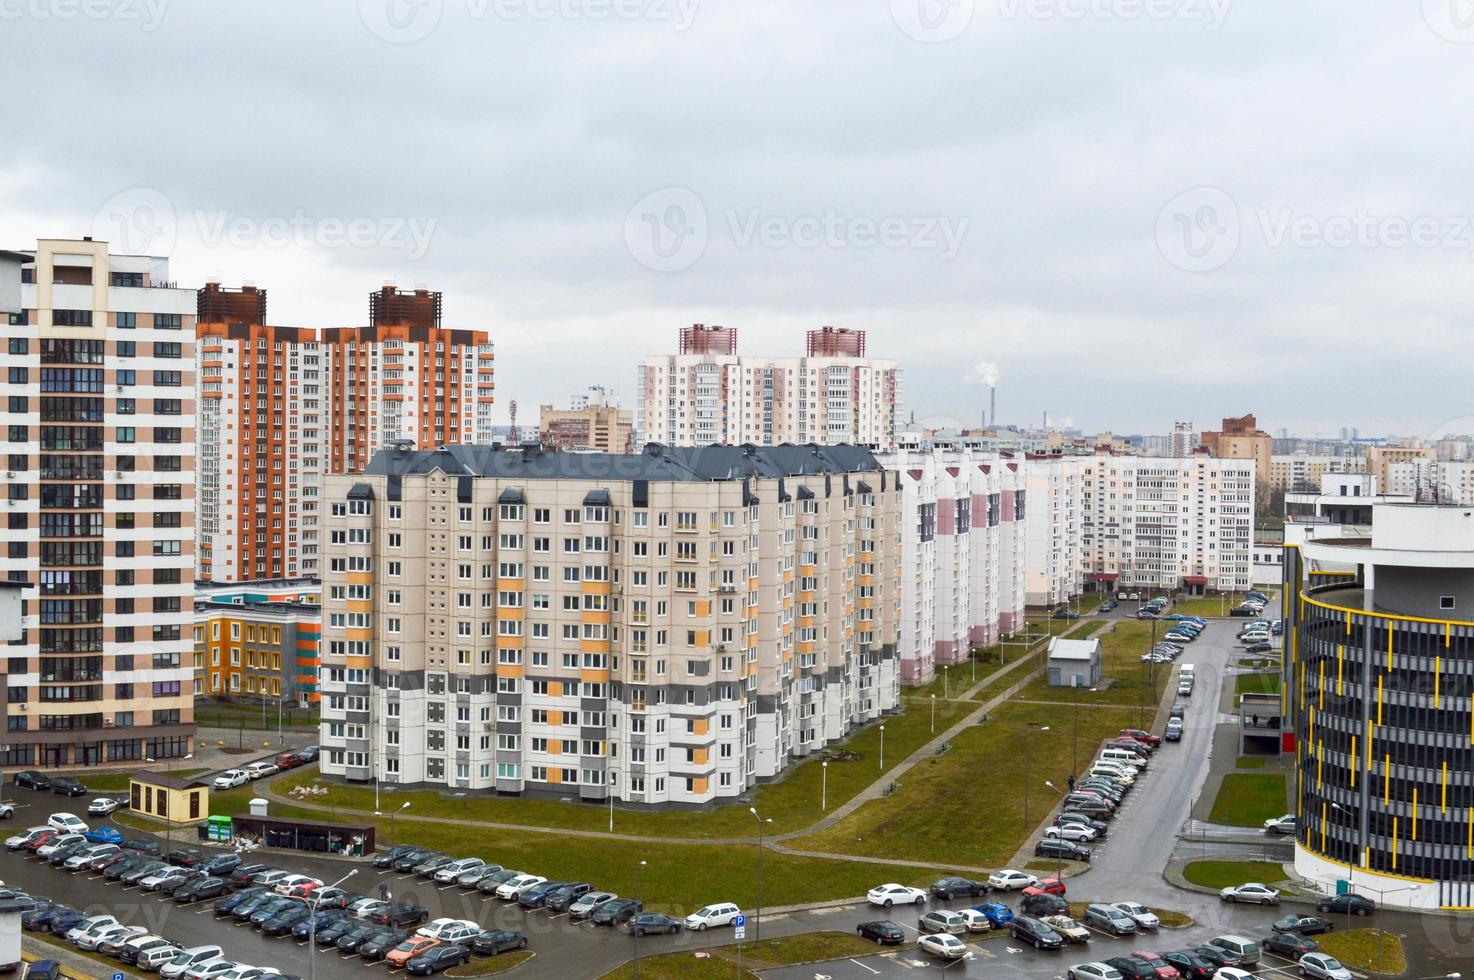 vista superior de una gran ciudad moderna con casas, edificios de varios pisos y arquitectura, estacionamiento y muchos autos foto